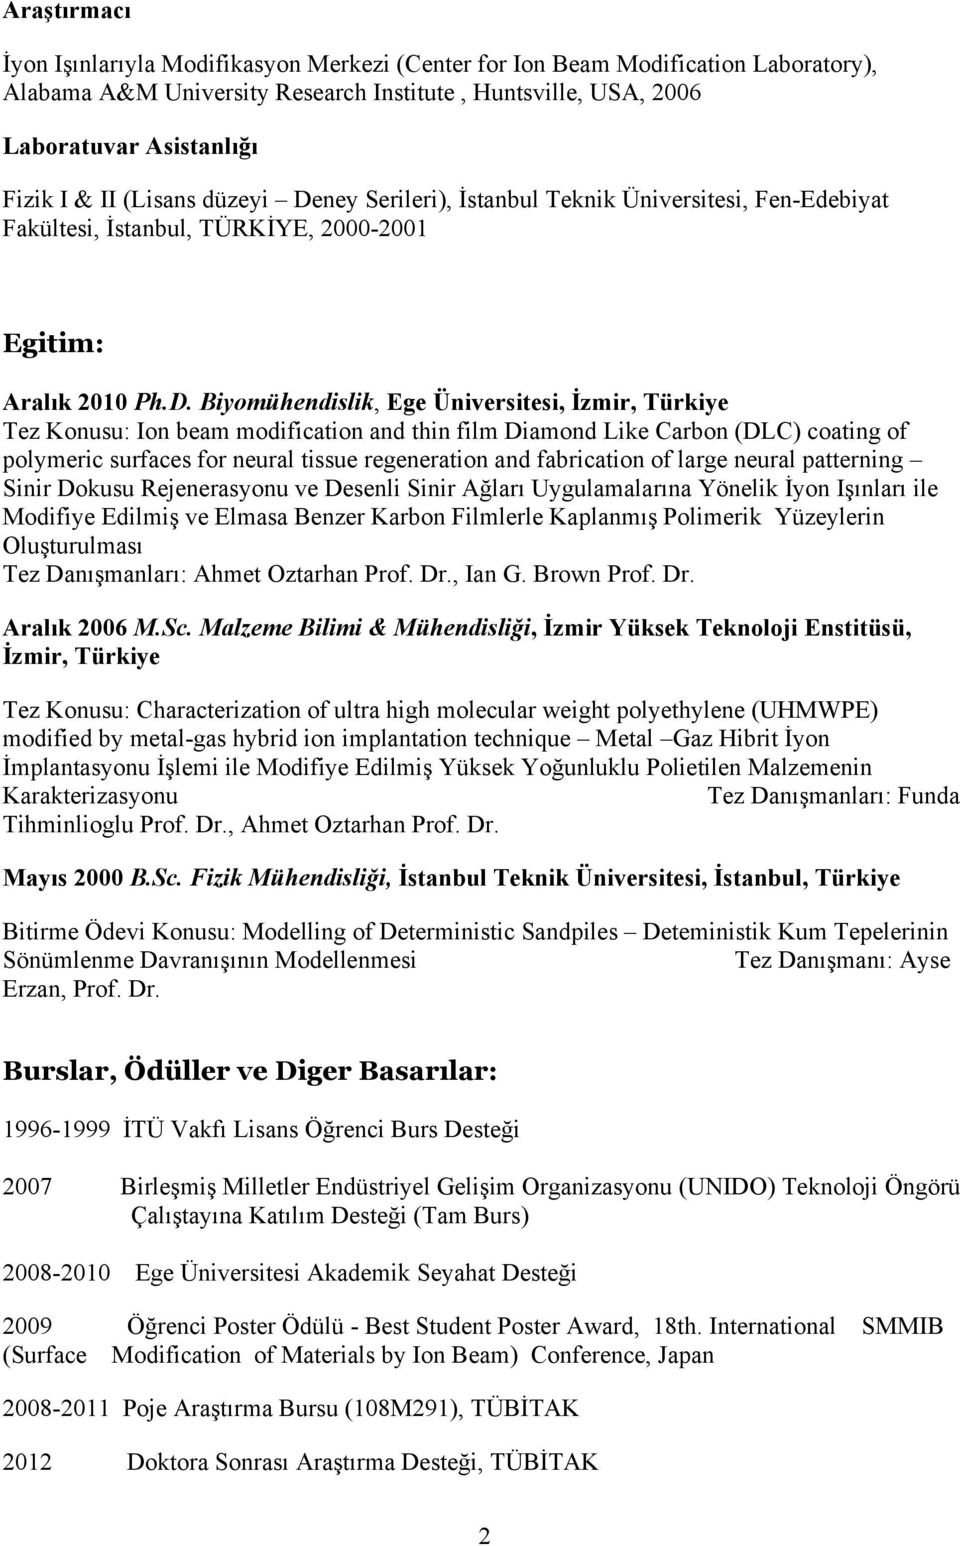 ney Serileri), İstanbul Teknik Üniversitesi, Fen-Edebiyat Fakültesi, İstanbul, TÜRKİYE, 2000-2001 Egitim: Aralık 2010 Ph.D.